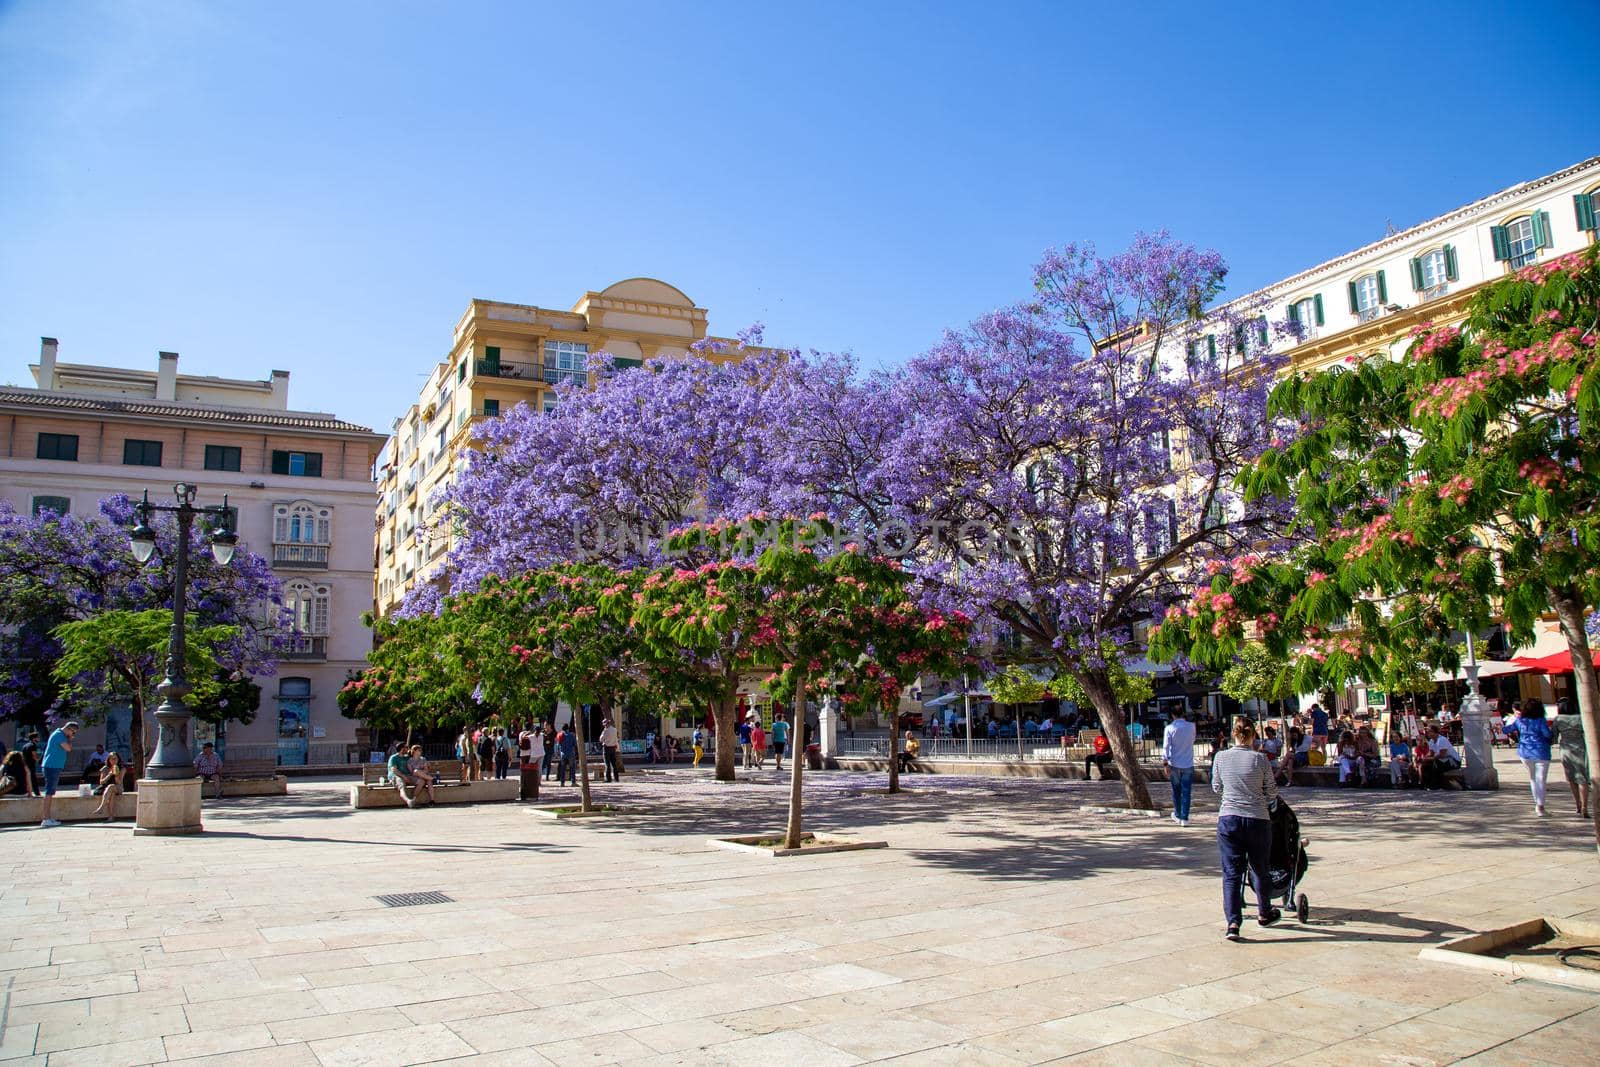 Plaza de la Merced in Malaga, Spain by oliverfoerstner